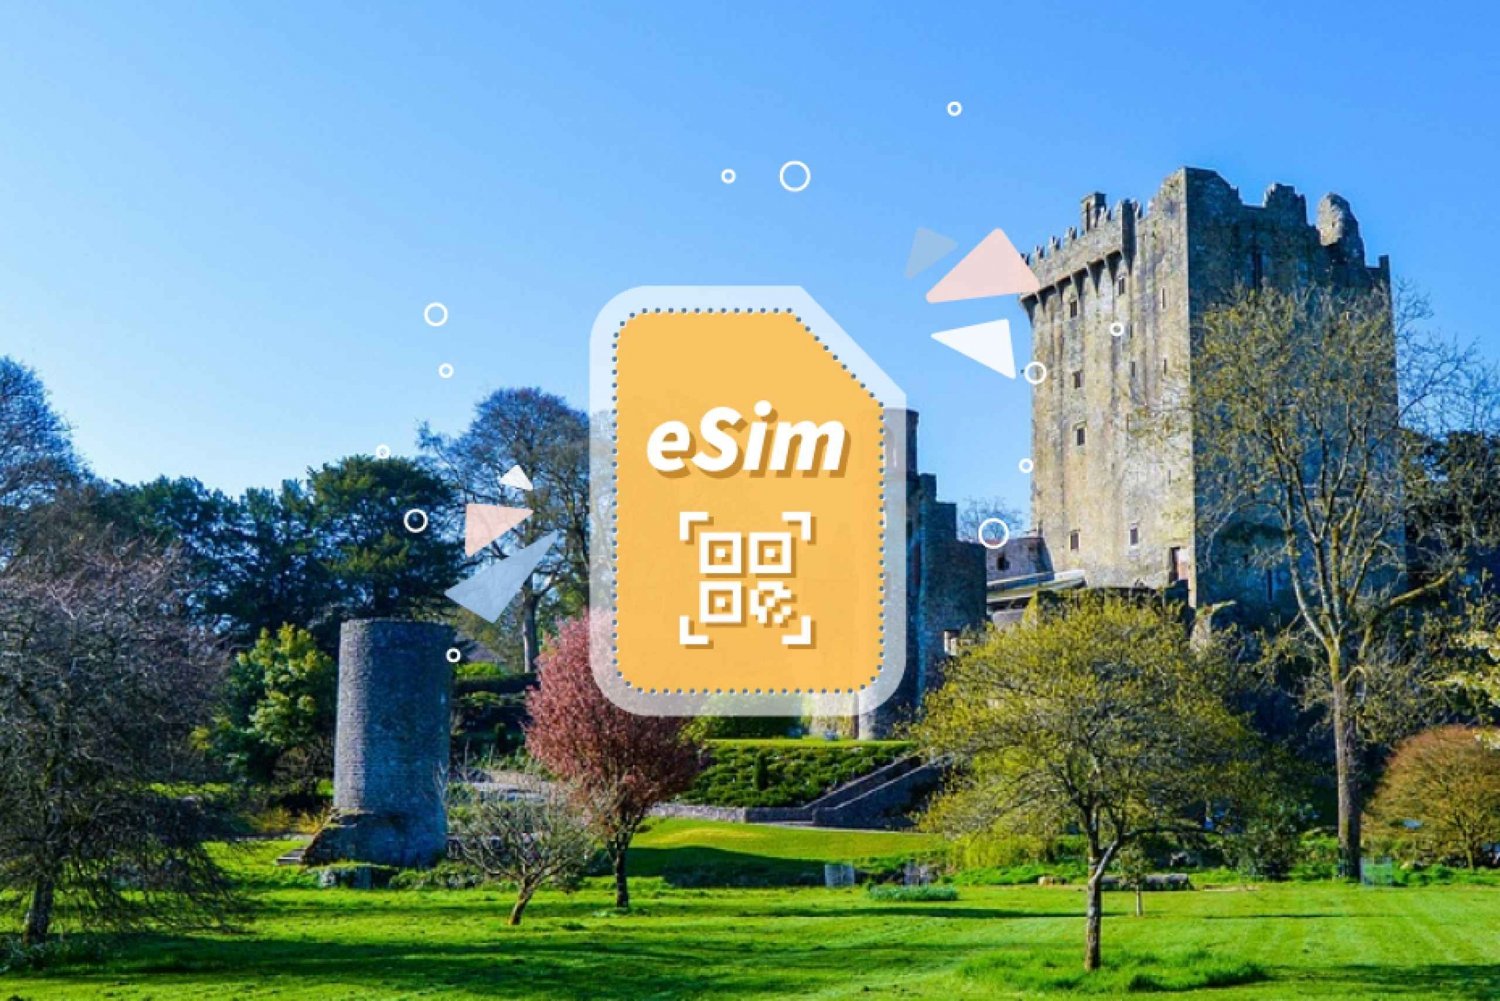 Ireland/Europe: eSim Mobile Data Plan